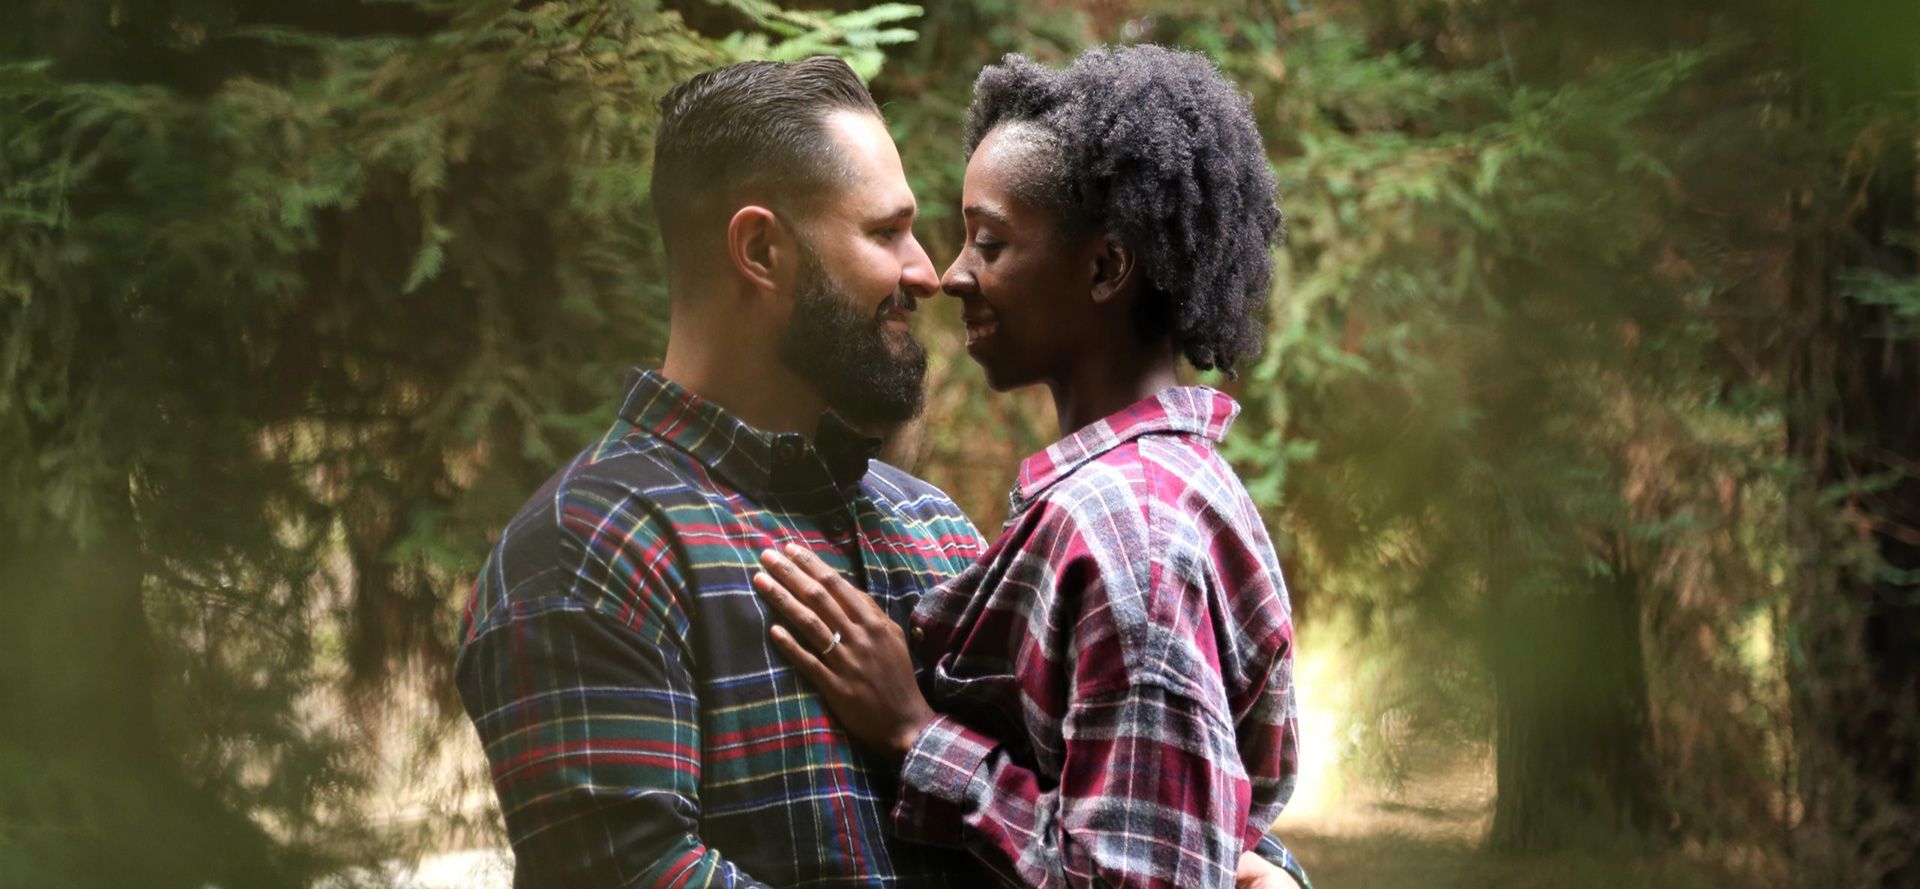 Homem branco e mulher negra em um encontro na floresta.